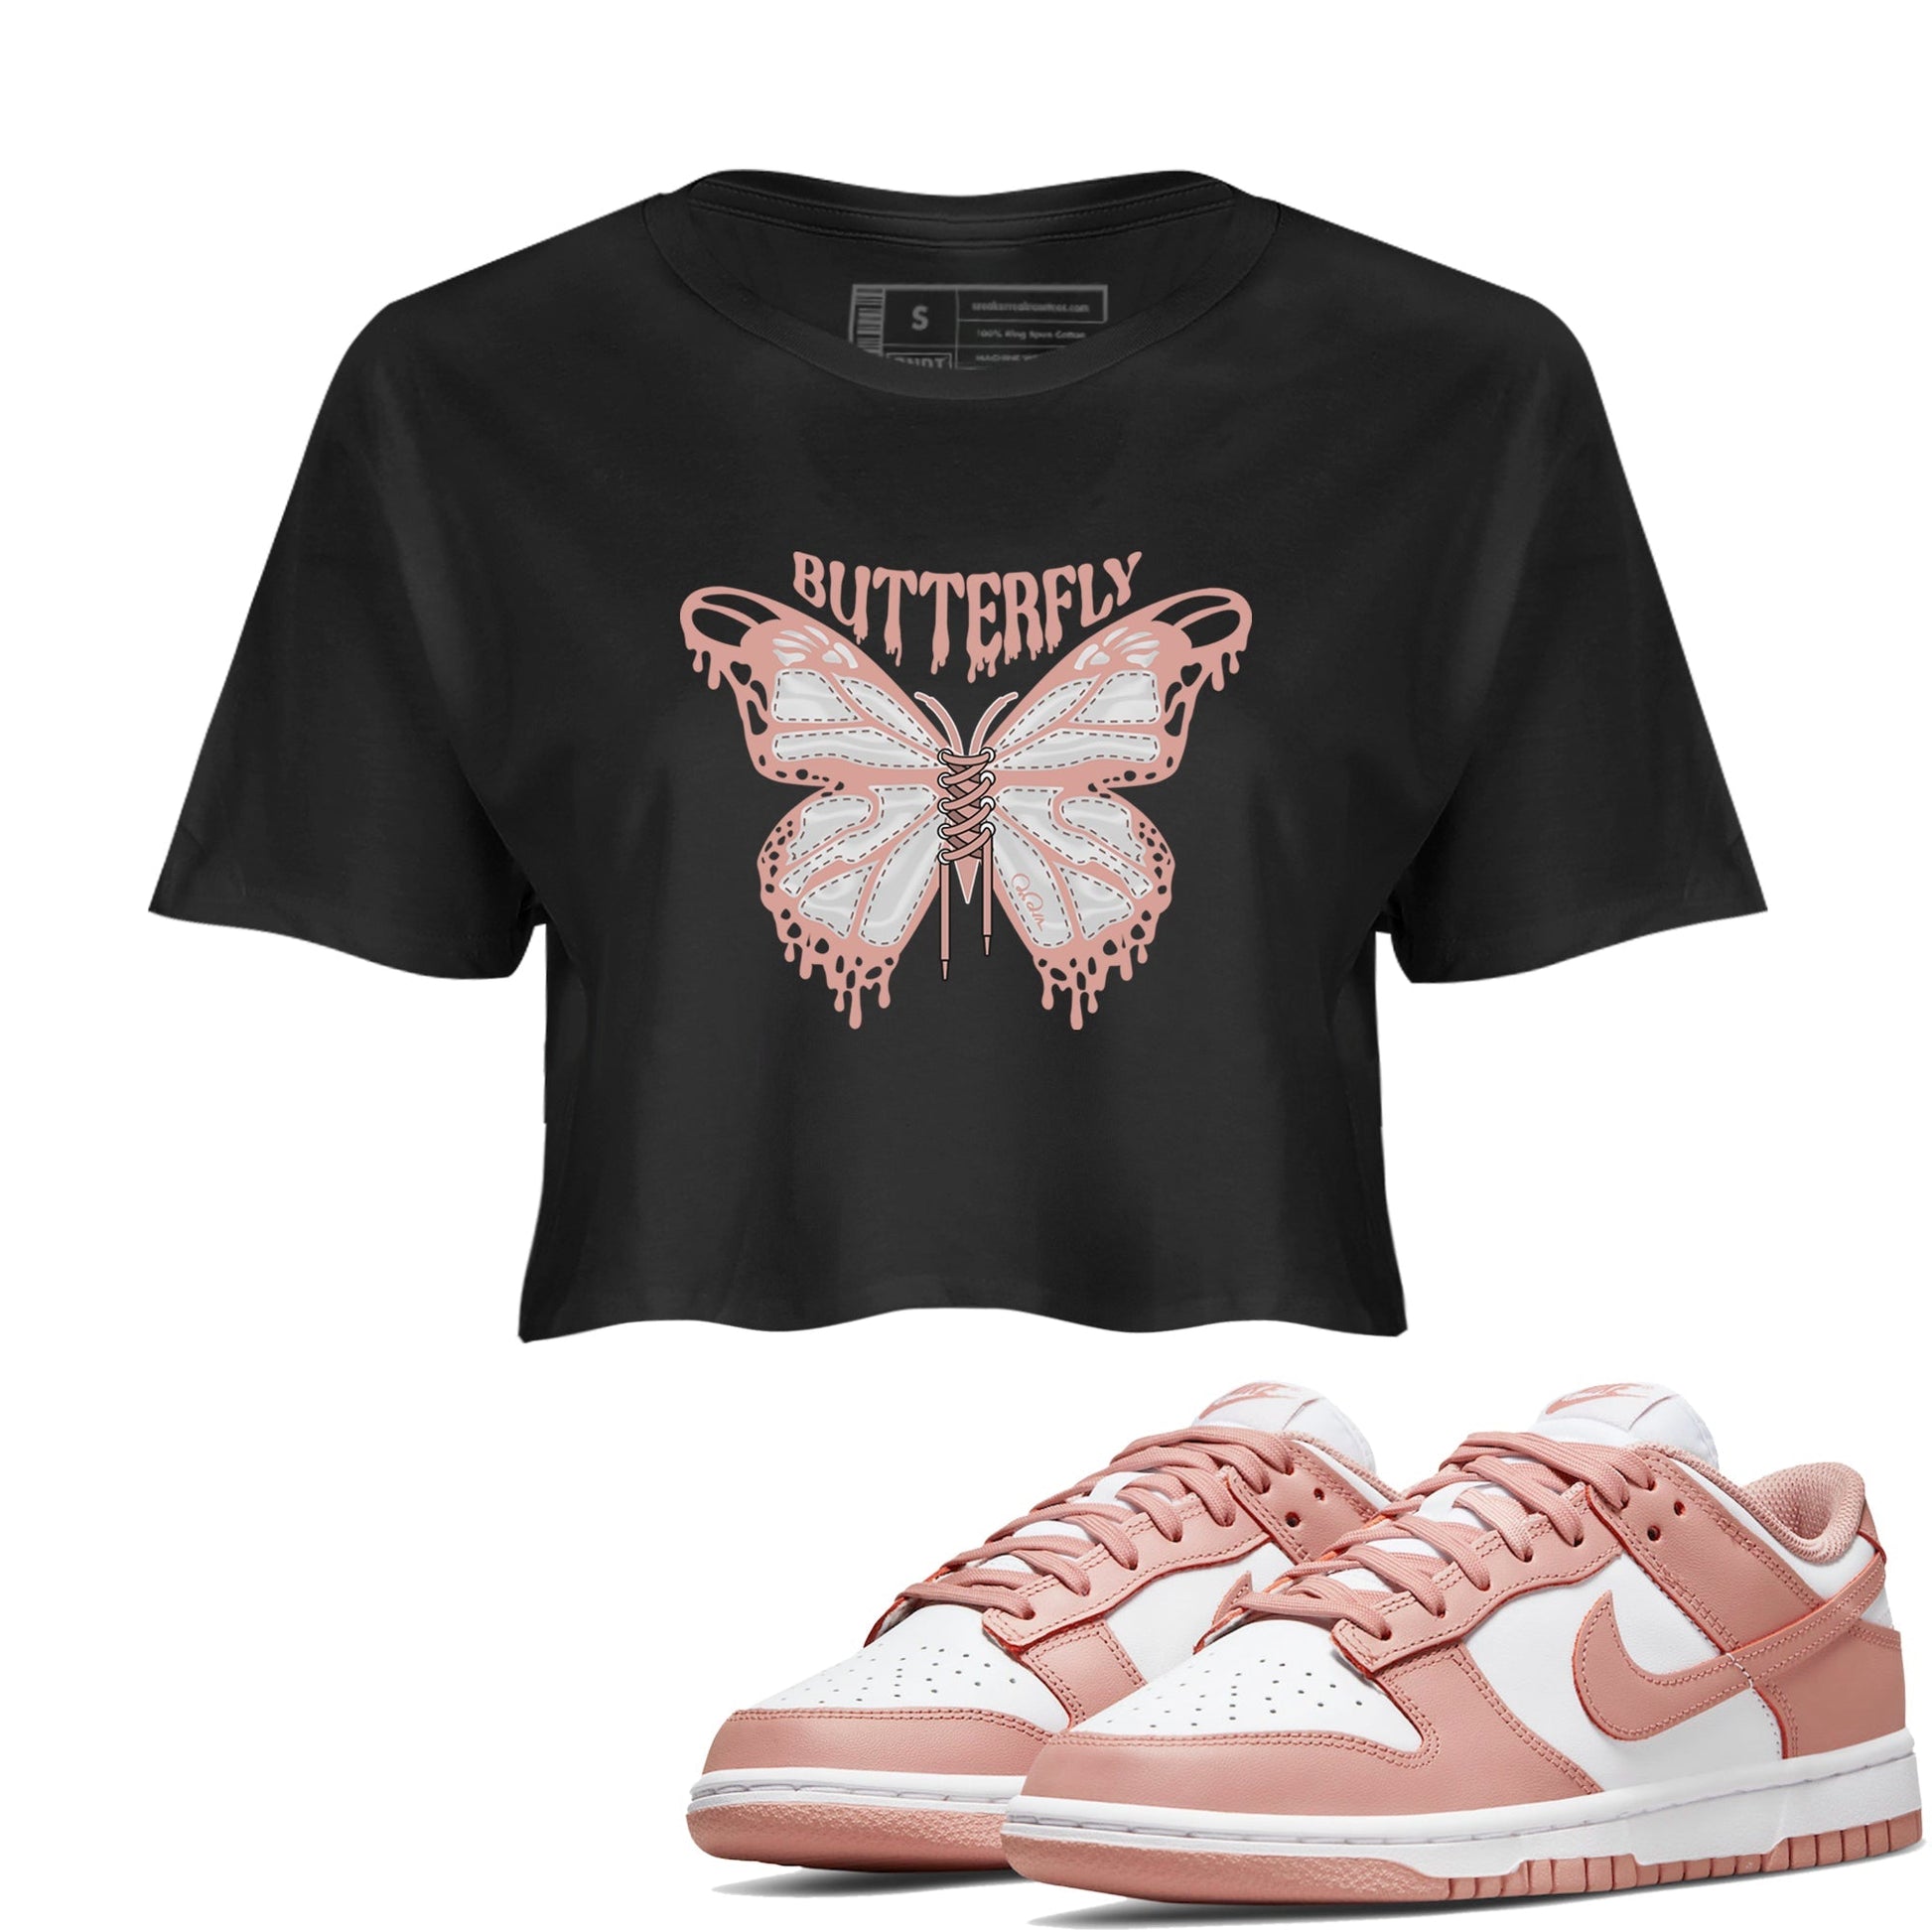 Dunk Rose Whisper shirt to match jordans Butterfly Streetwear Sneaker Shirt Nike Dunk LowRose Whisper Drip Gear Zone Sneaker Matching Clothing Black 1 Crop T-Shirt